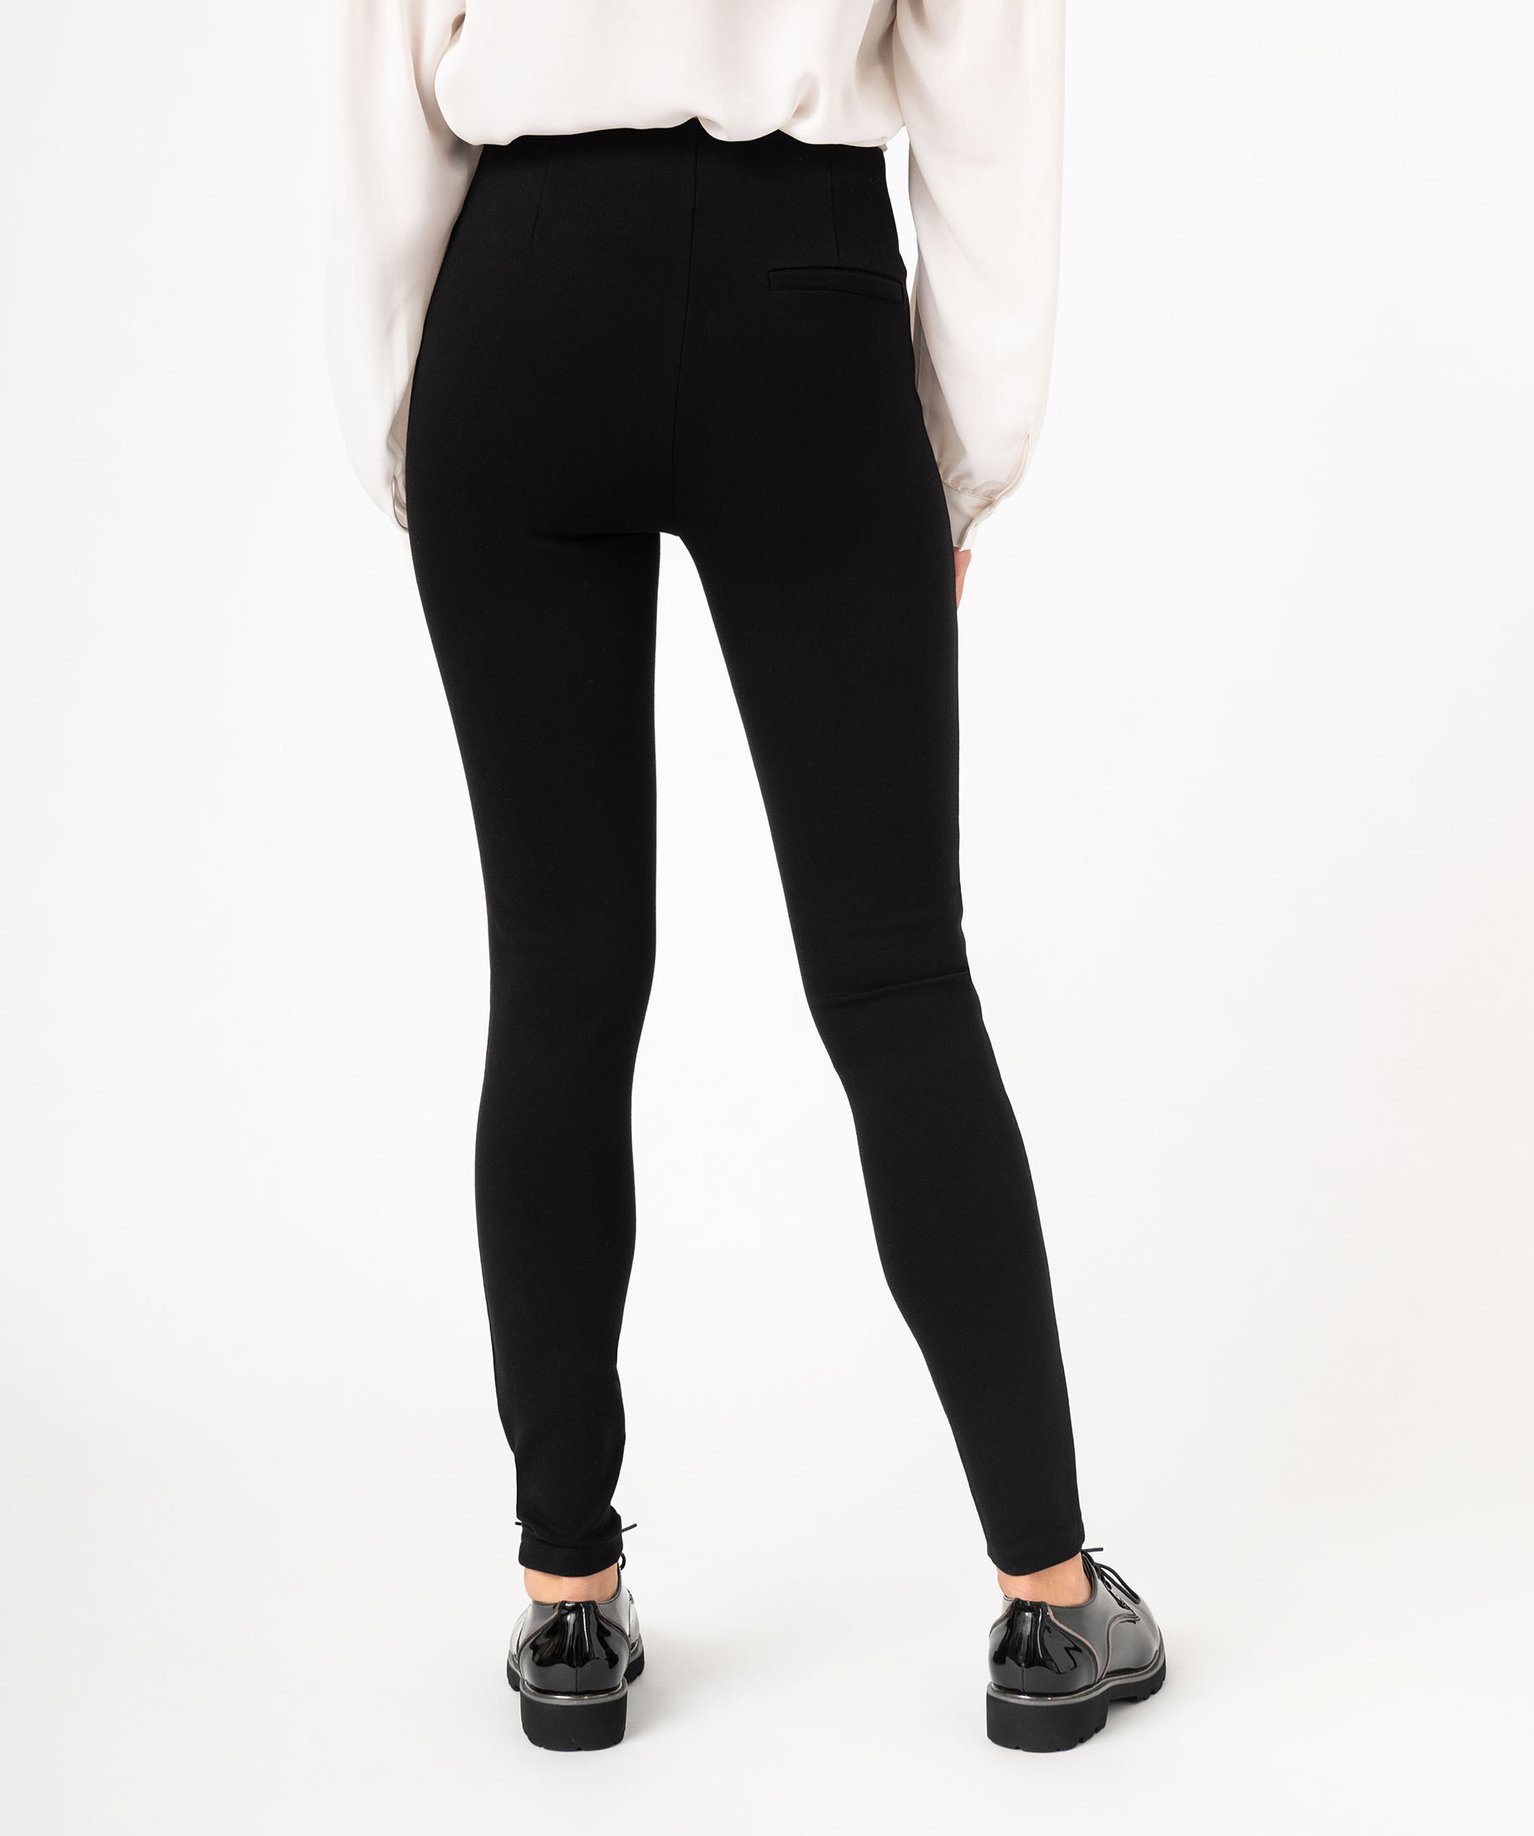 legging uni a large elastique et bouton decoratif femme noir leggings et jeggings